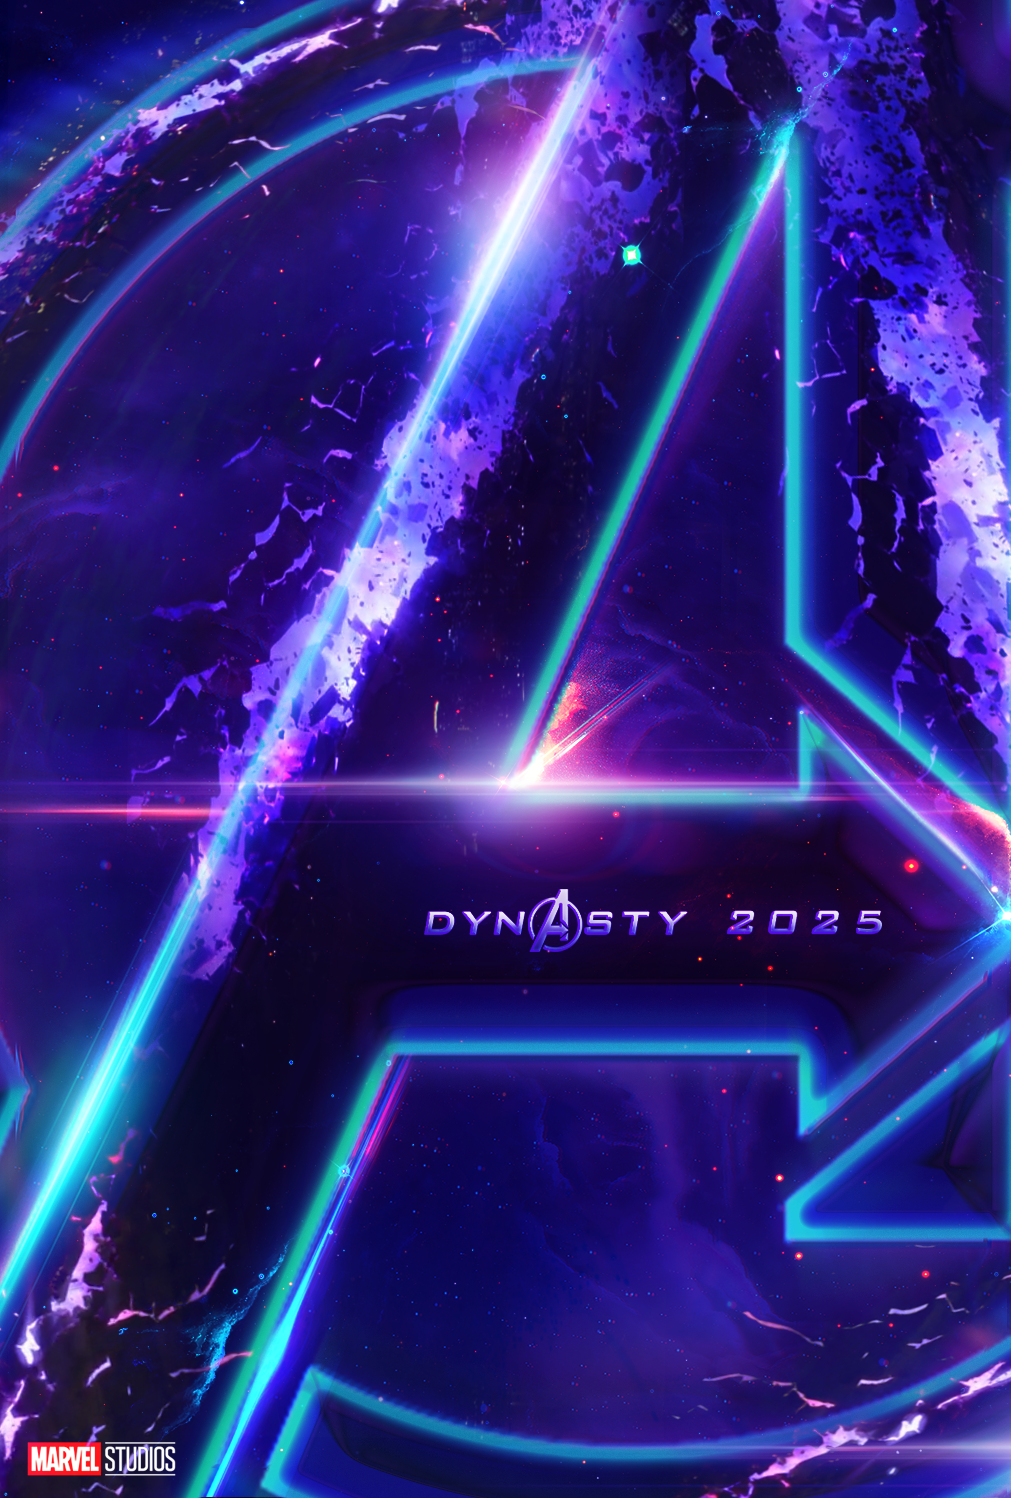 AVENGERS 5: THE KANG DYNASTY - The Trailer (2025) Marvel Studios 